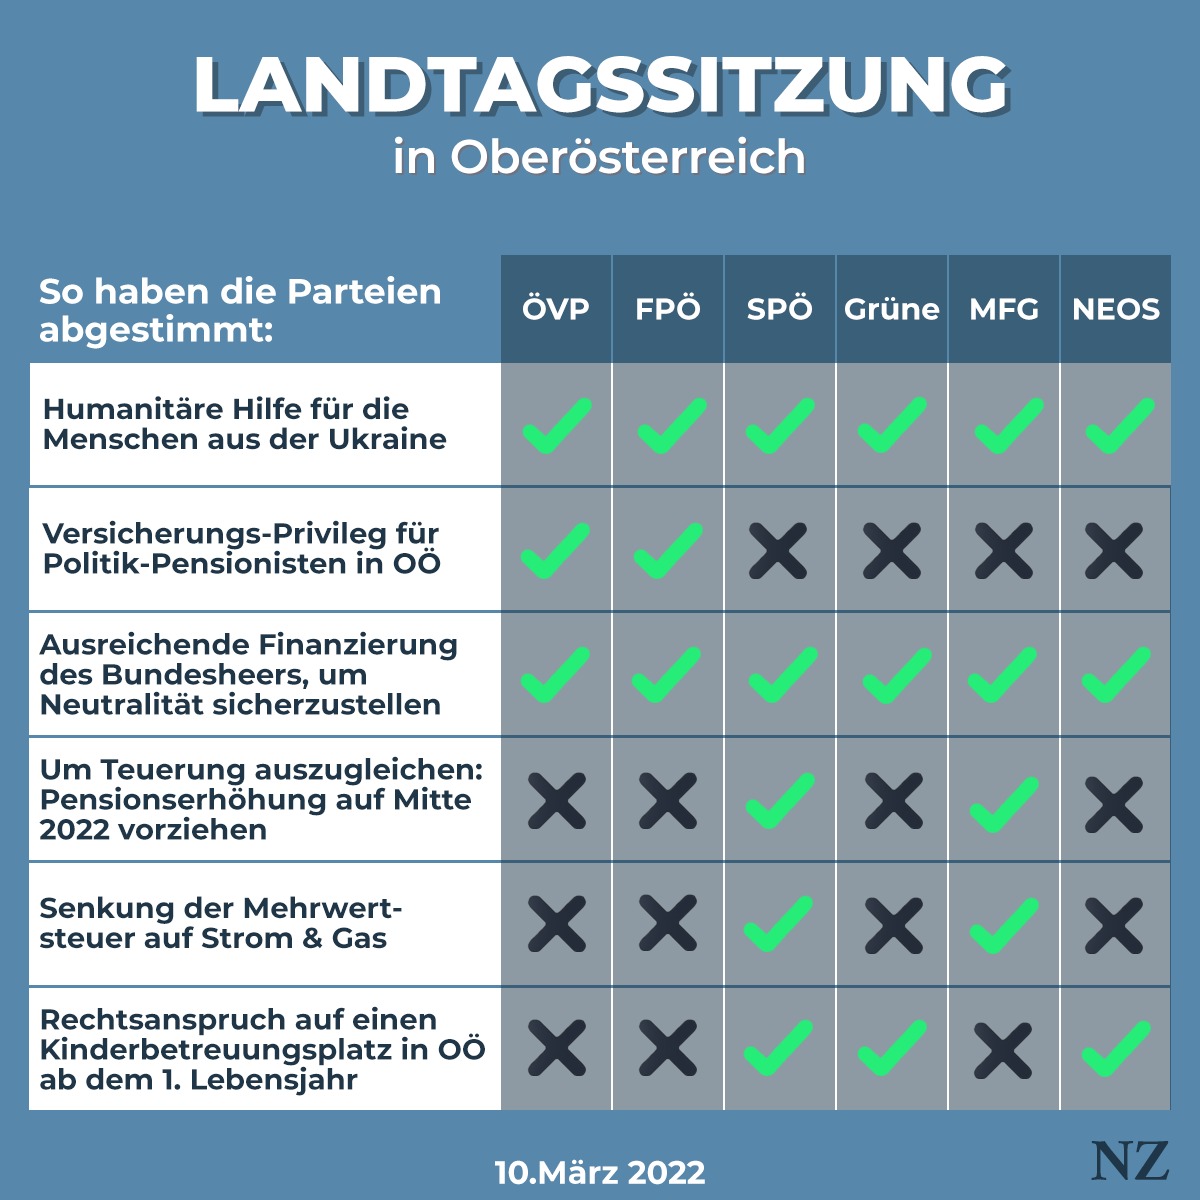 So haben die Parteien die wichtigsten Beschlüsse in der OÖ-Landtagssitzung am 10. März 2022 abgestimmt.